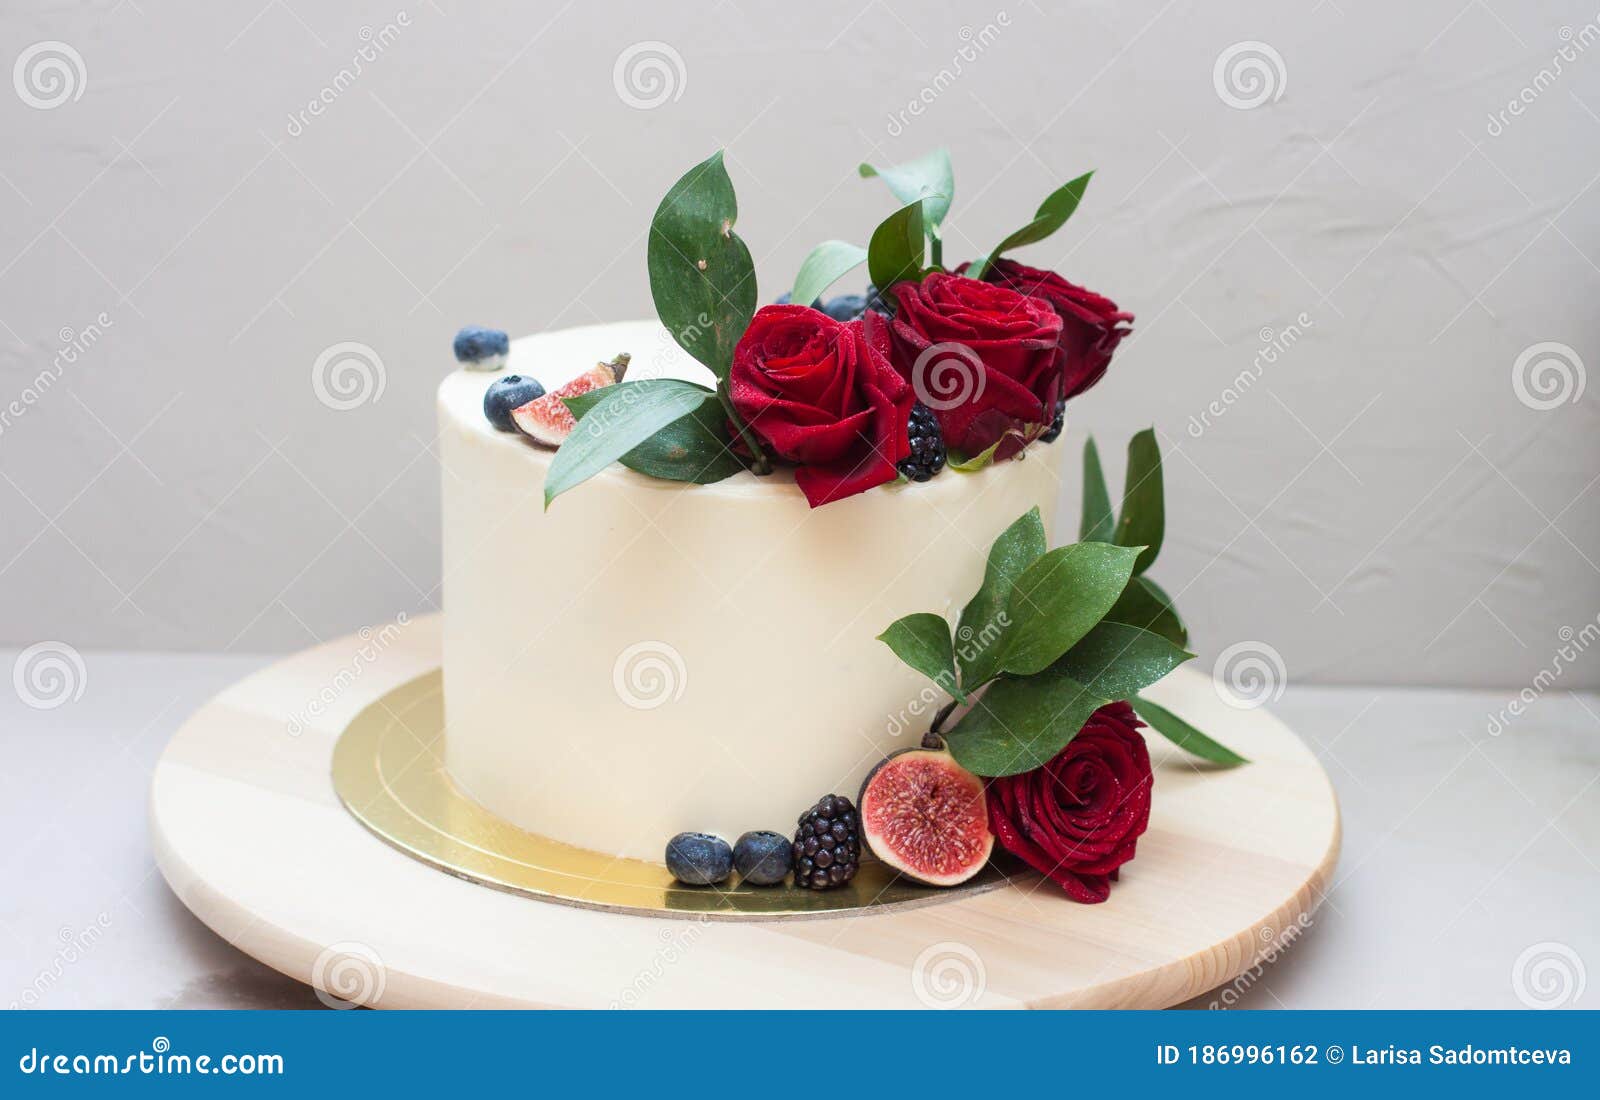 Torta De Boda Elegante Decorada Con Rosas Rojas Frescas Hojas Verdes Higos  Y Arándanos. Fondo Gris Claro Foto de archivo - Imagen de cereza, rojo:  186996162